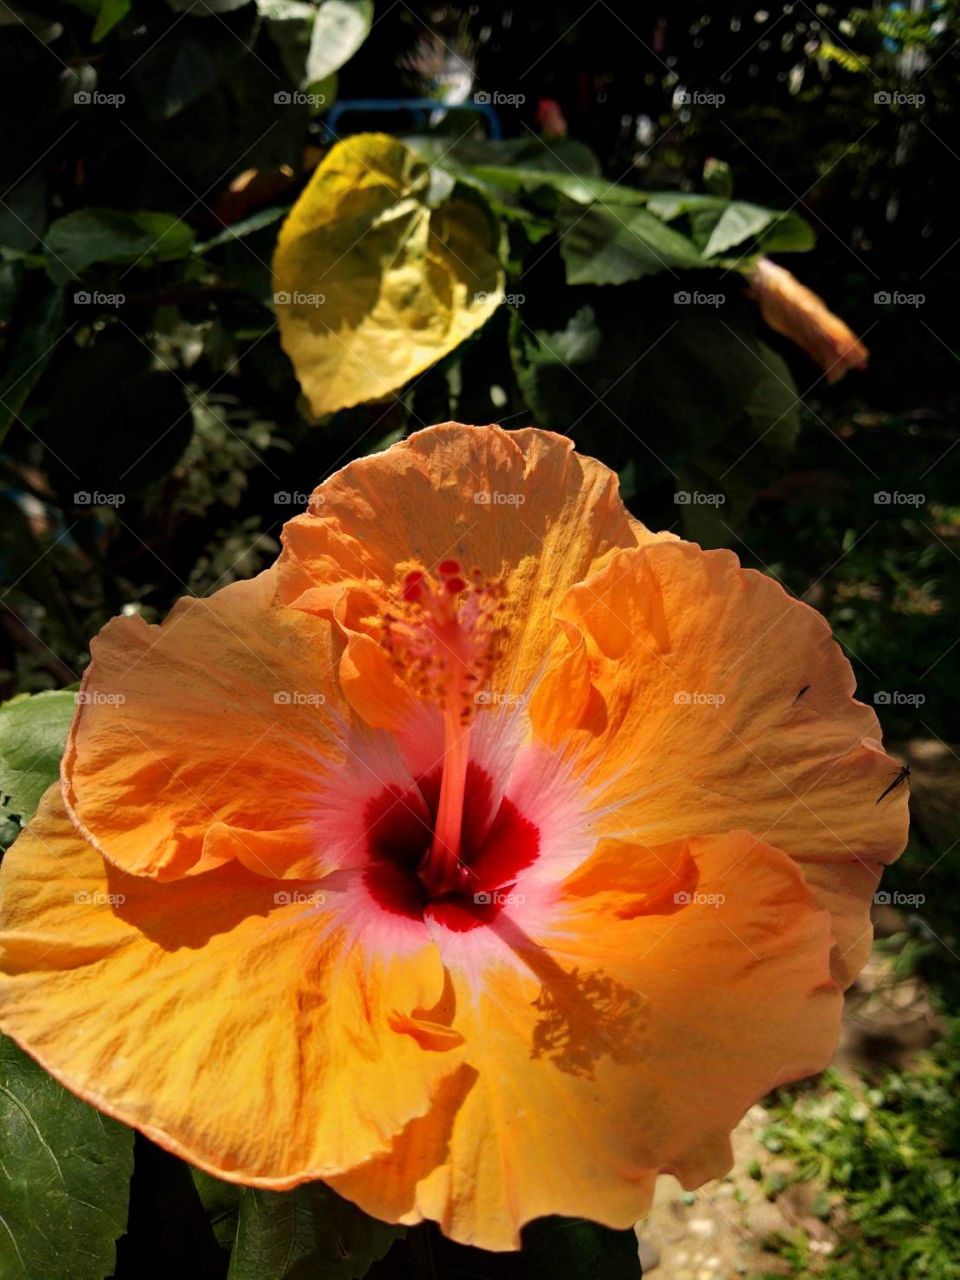 Orange Hibiscus in the garden.